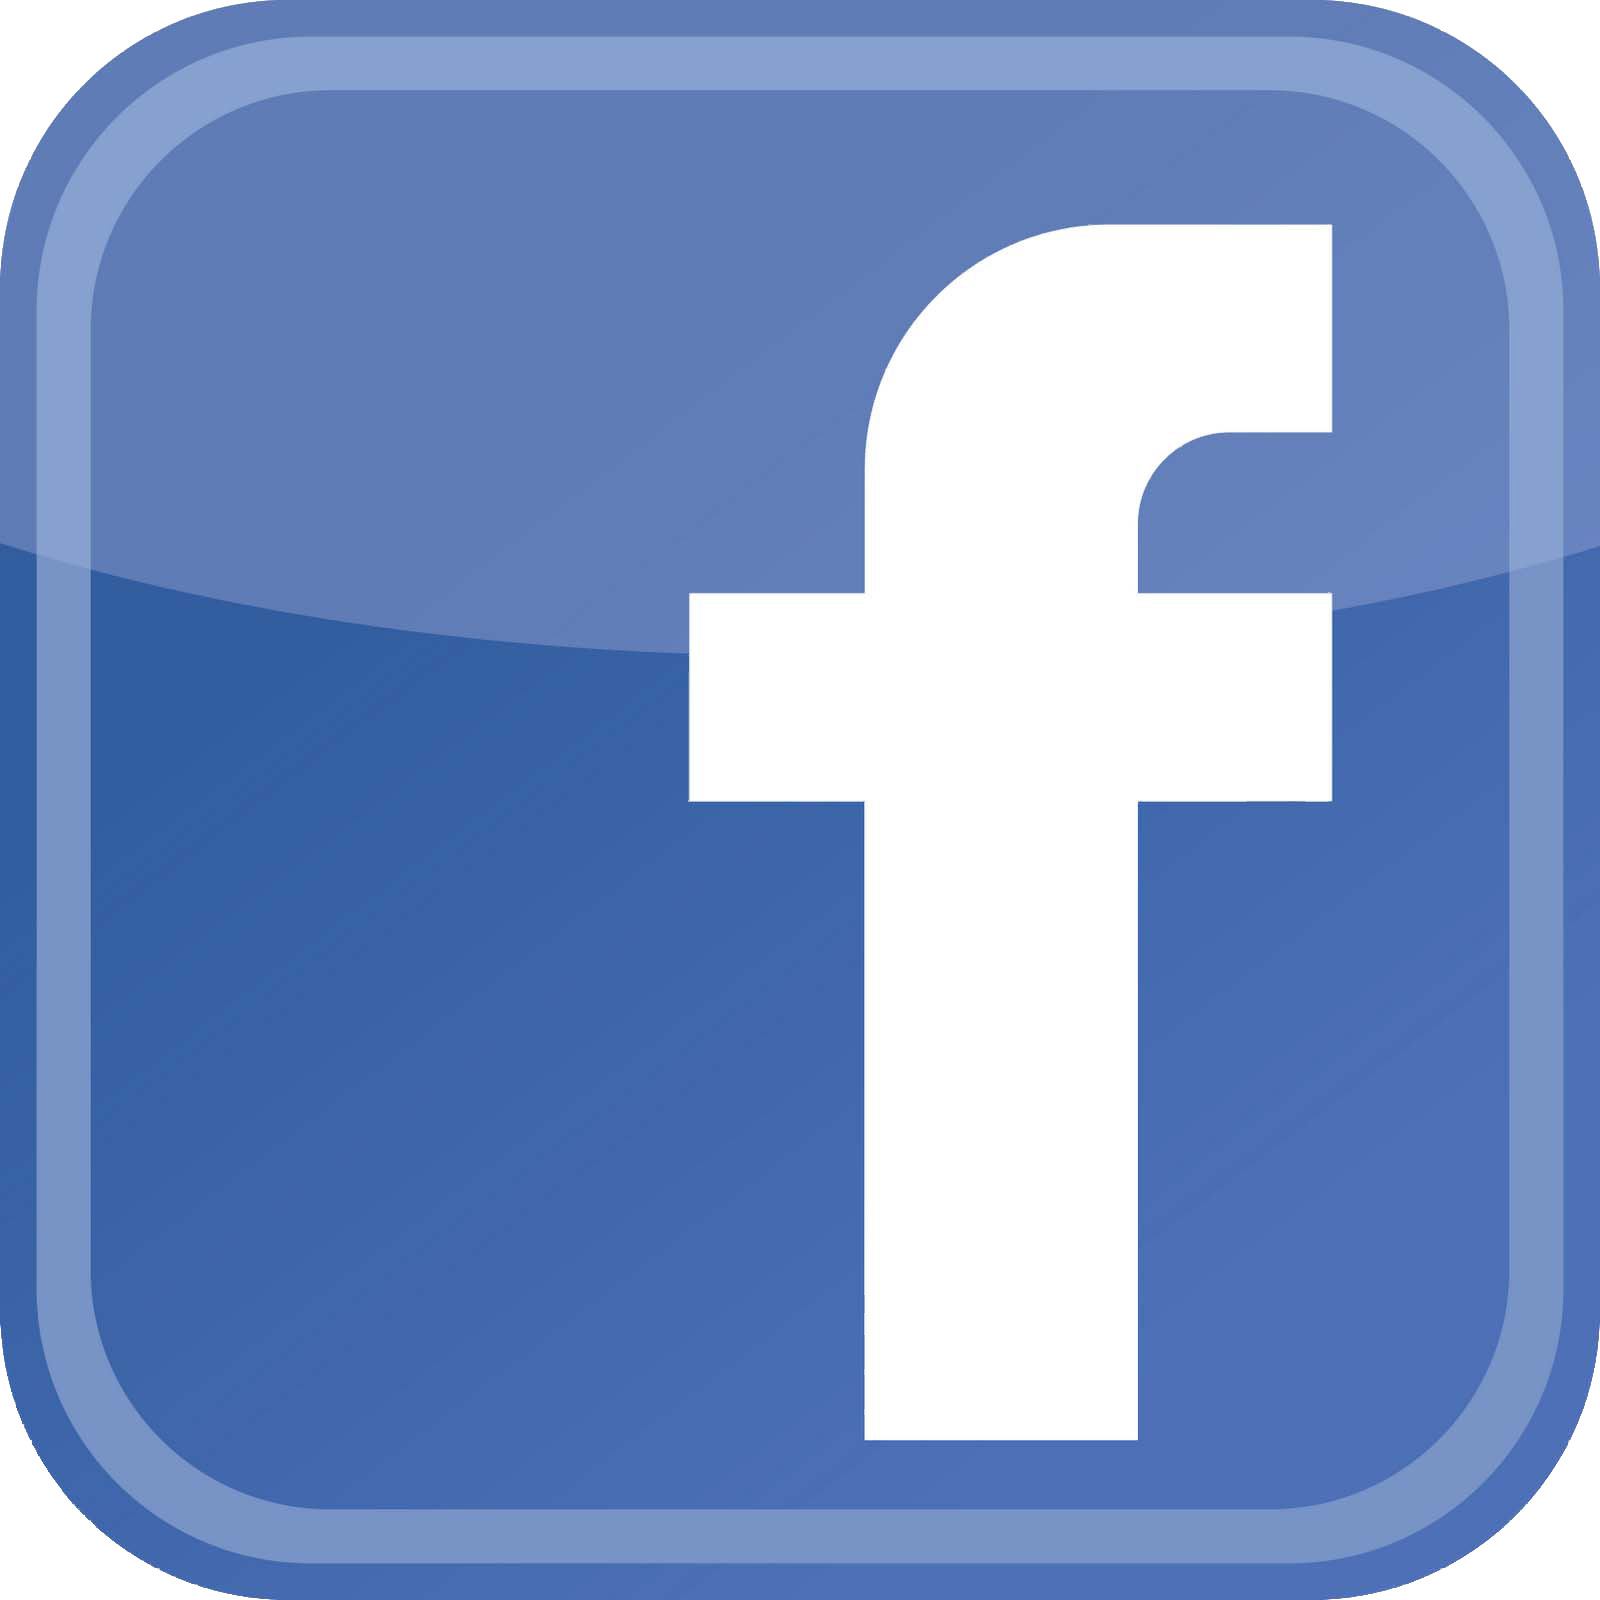 Download Facebook Logo for Website